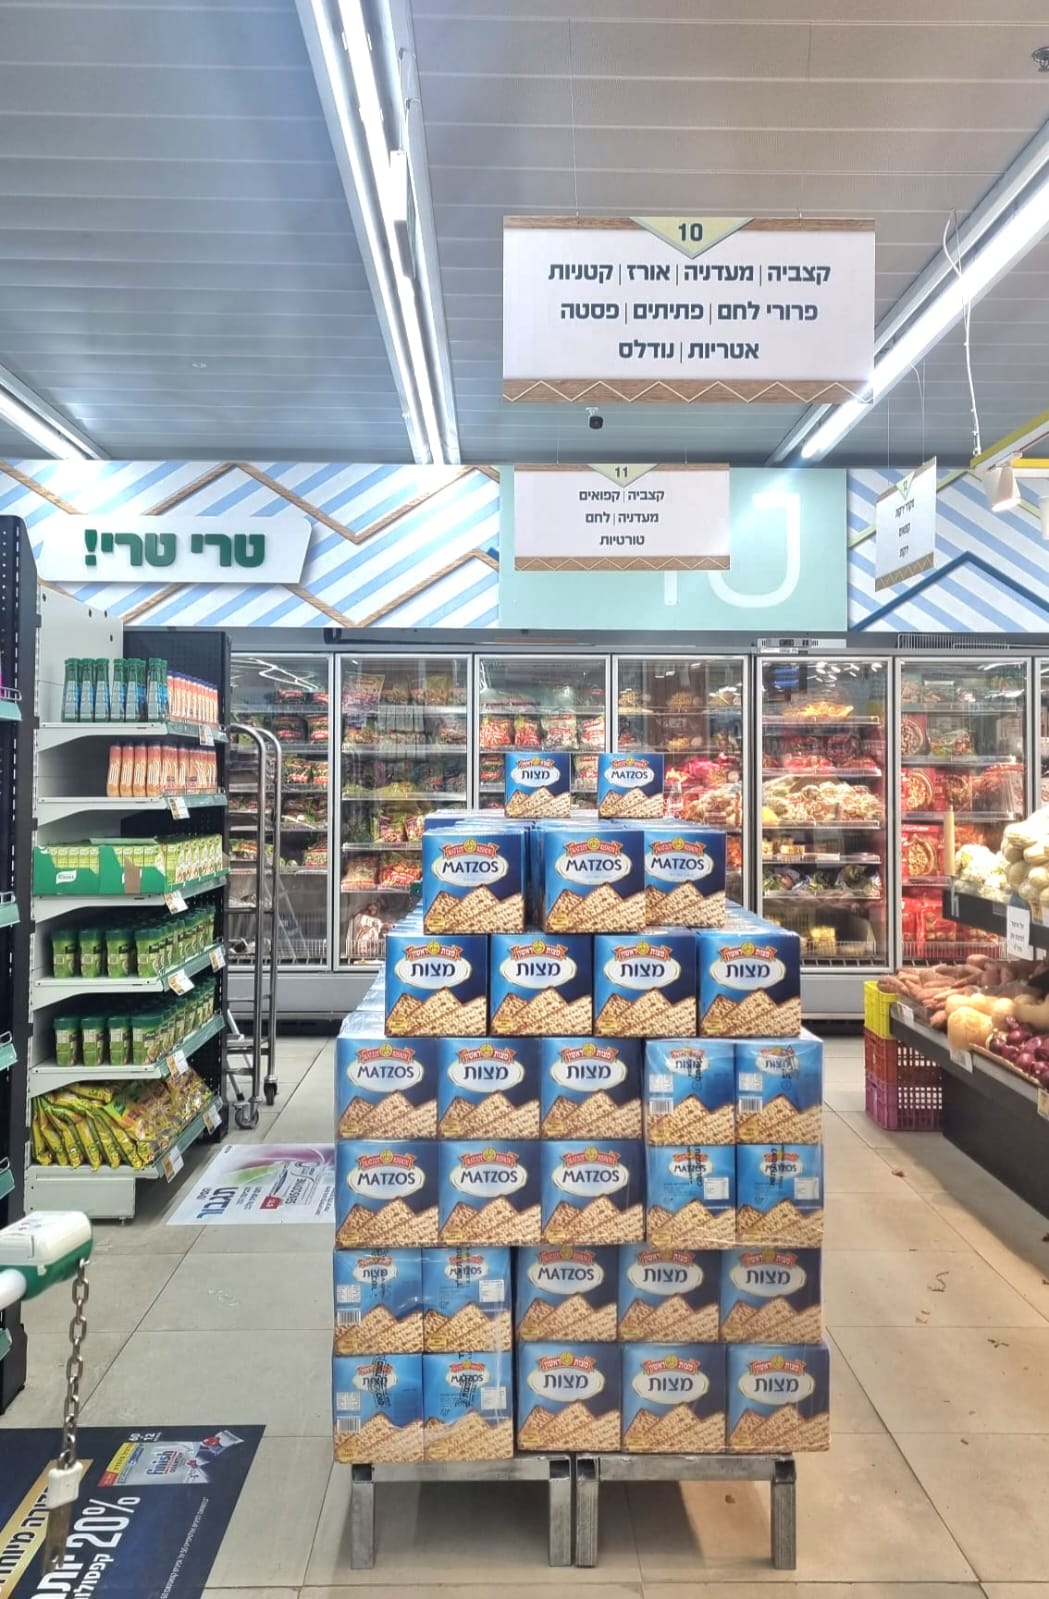 רשת מחסני השוק משיקה את סניף "מחסני השוק בשבילך"- הפורמט השכונתי שלה בפסגת זאב-ירושלים, בהשקעה של מיליוני שקלים